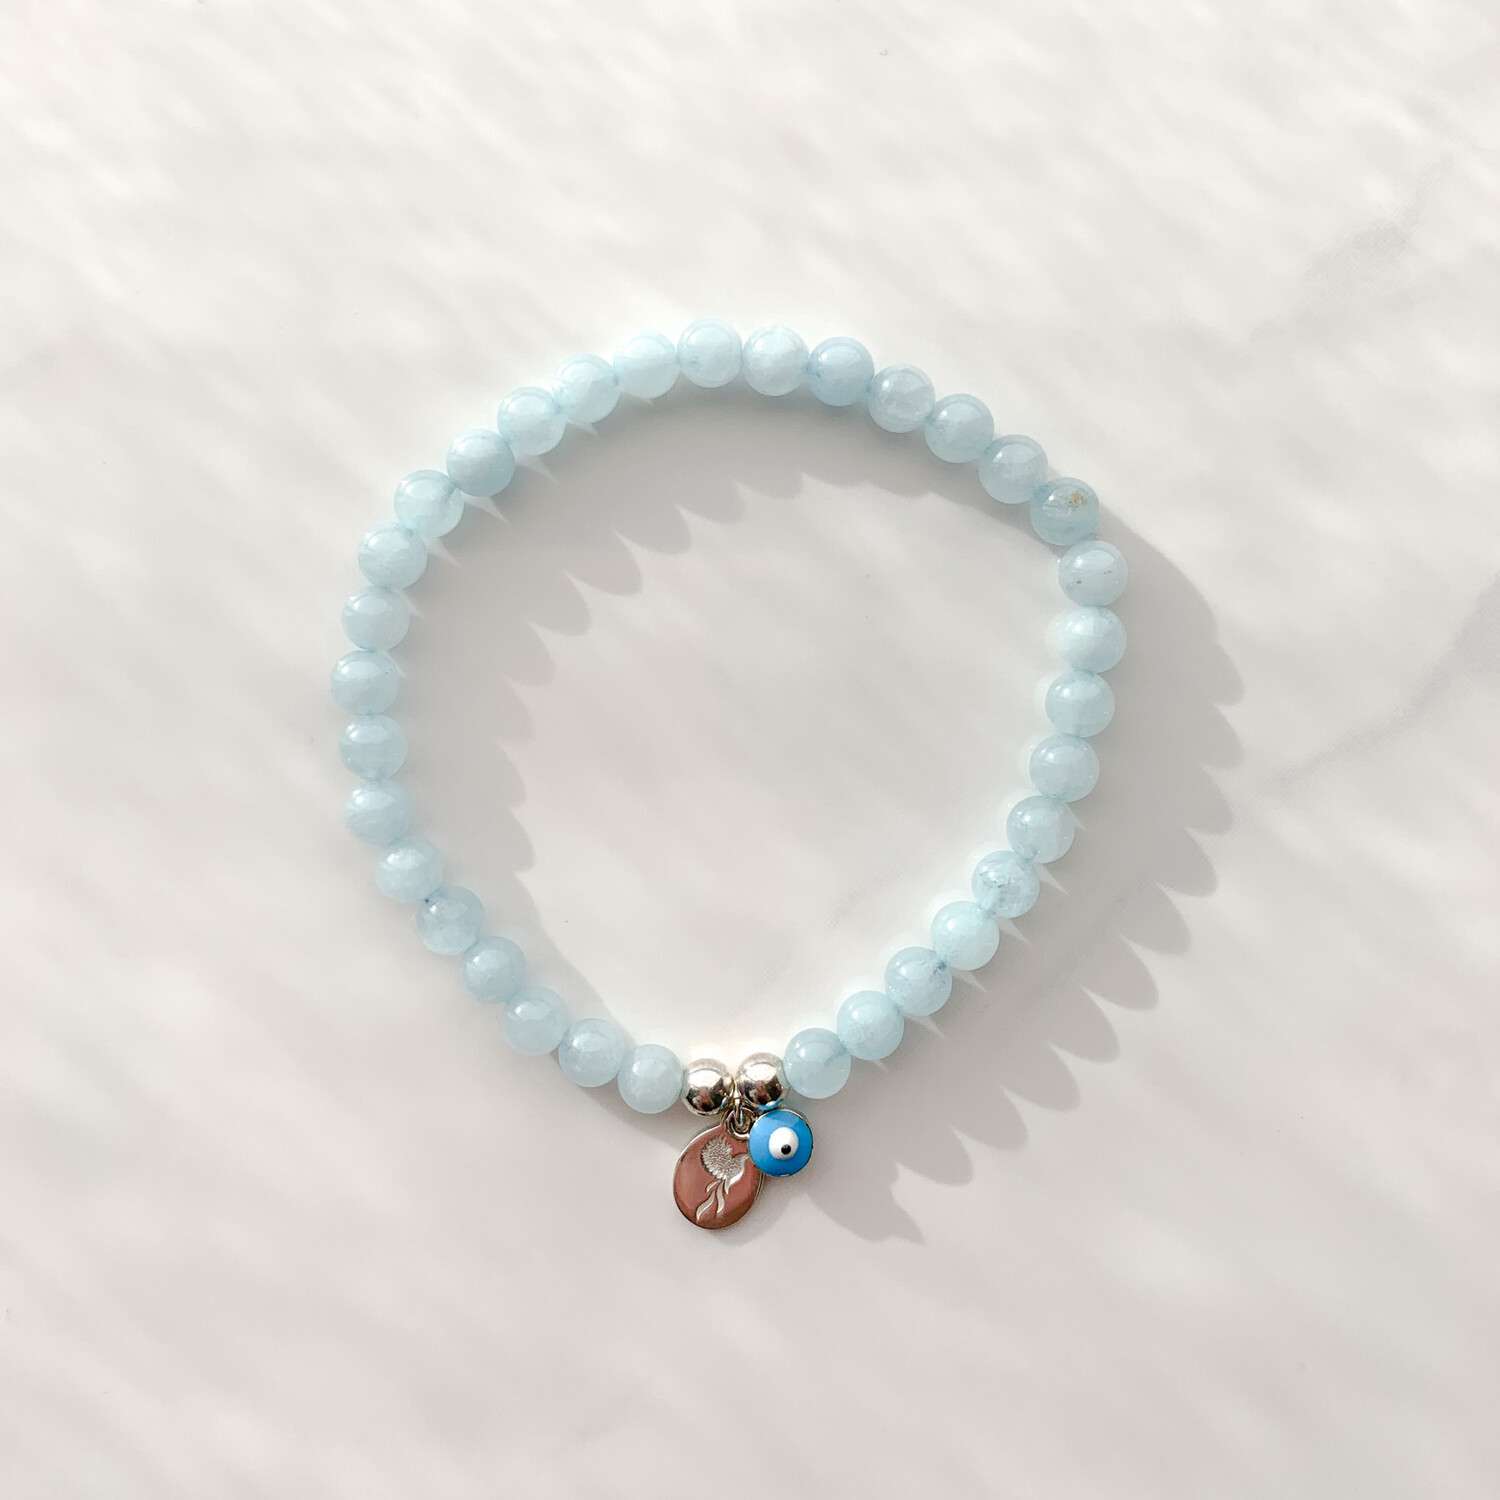 Charity Bracelet in Baby Blue